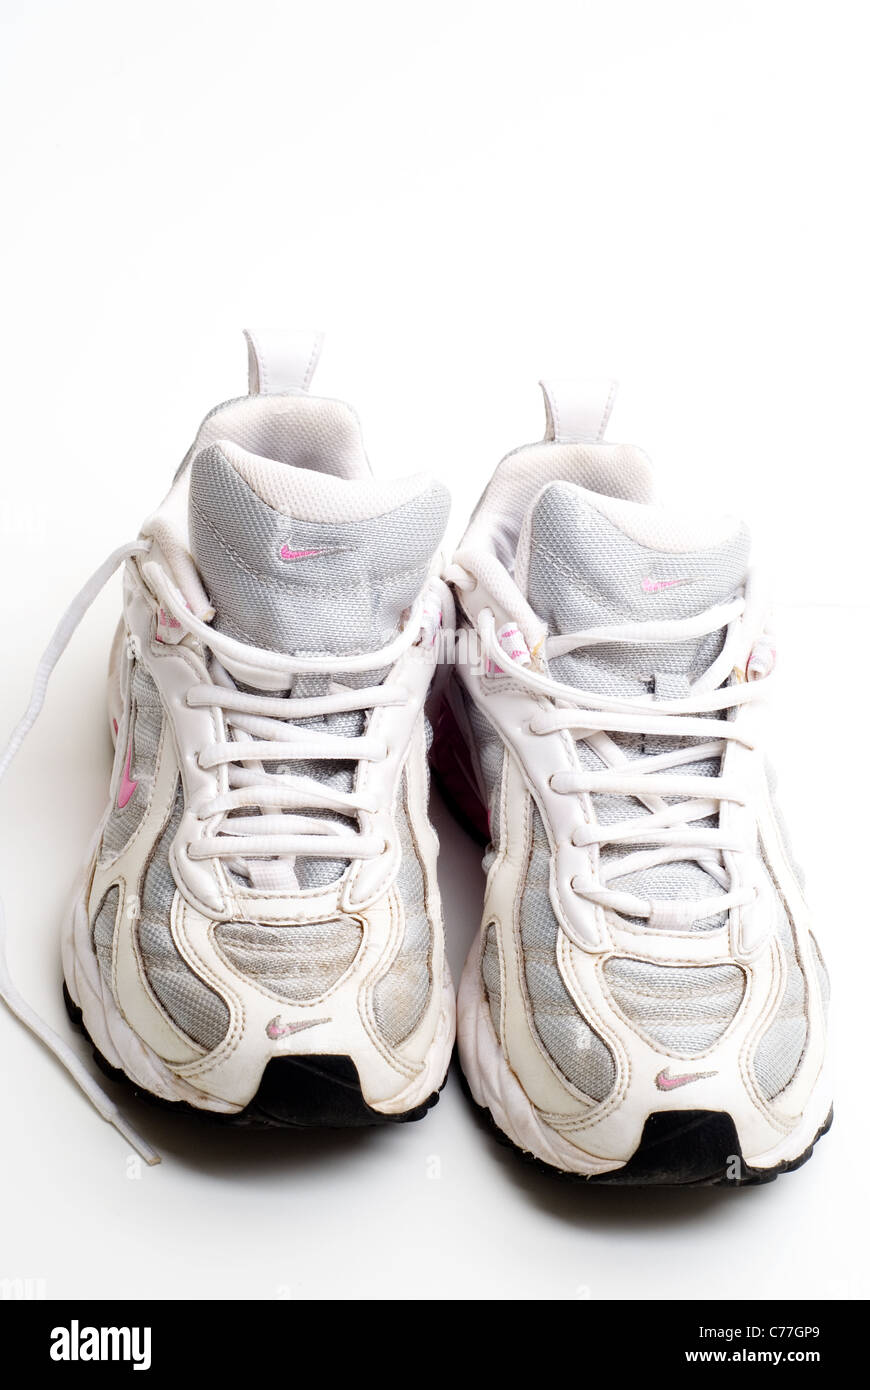 Par de viejos zapatos Nike Running desgastados Fotografía de stock - Alamy